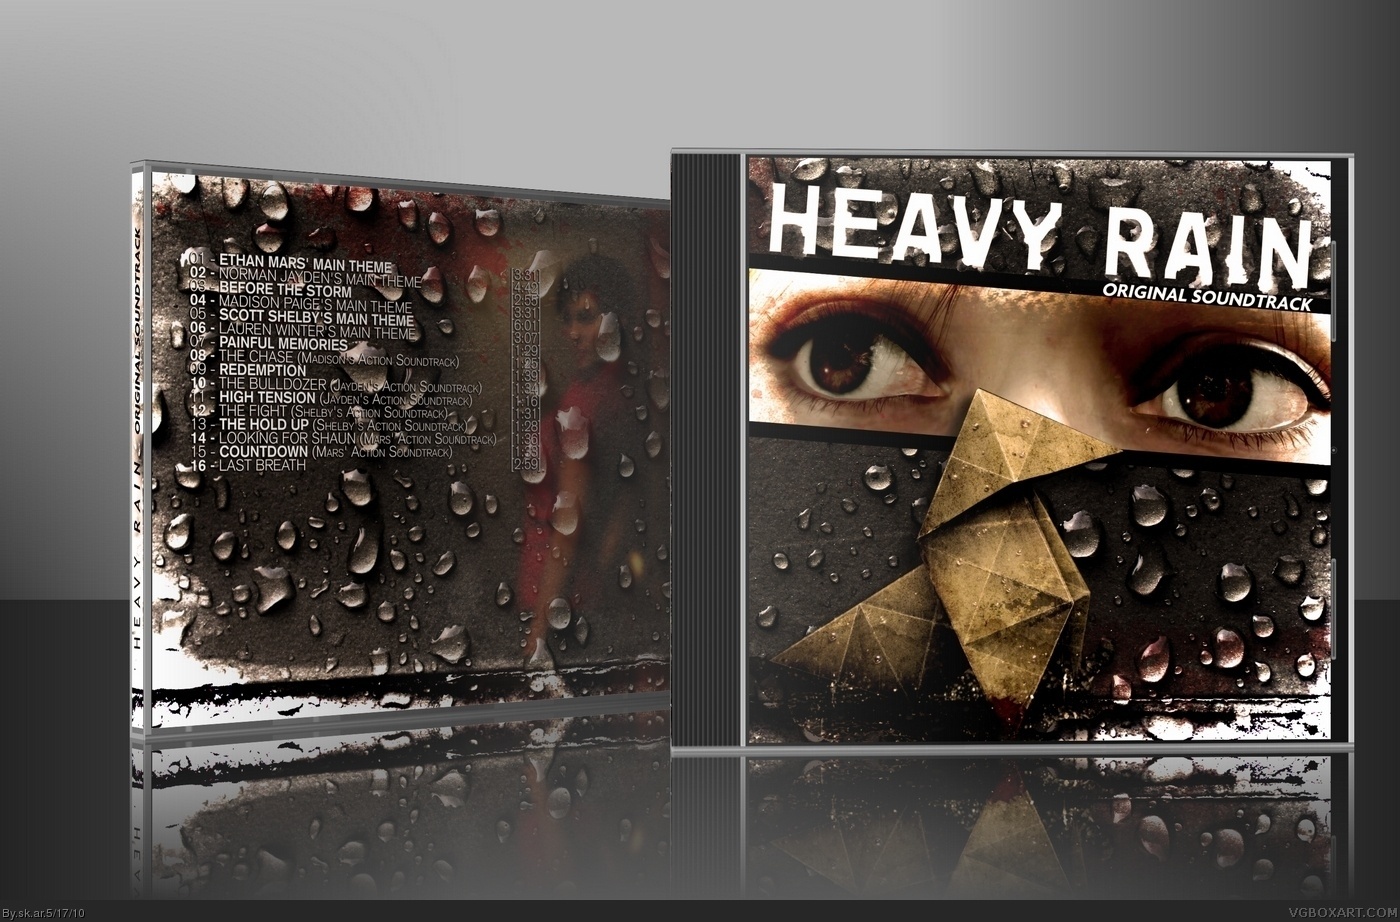 Heavy Rain Original Soundtrack box cover